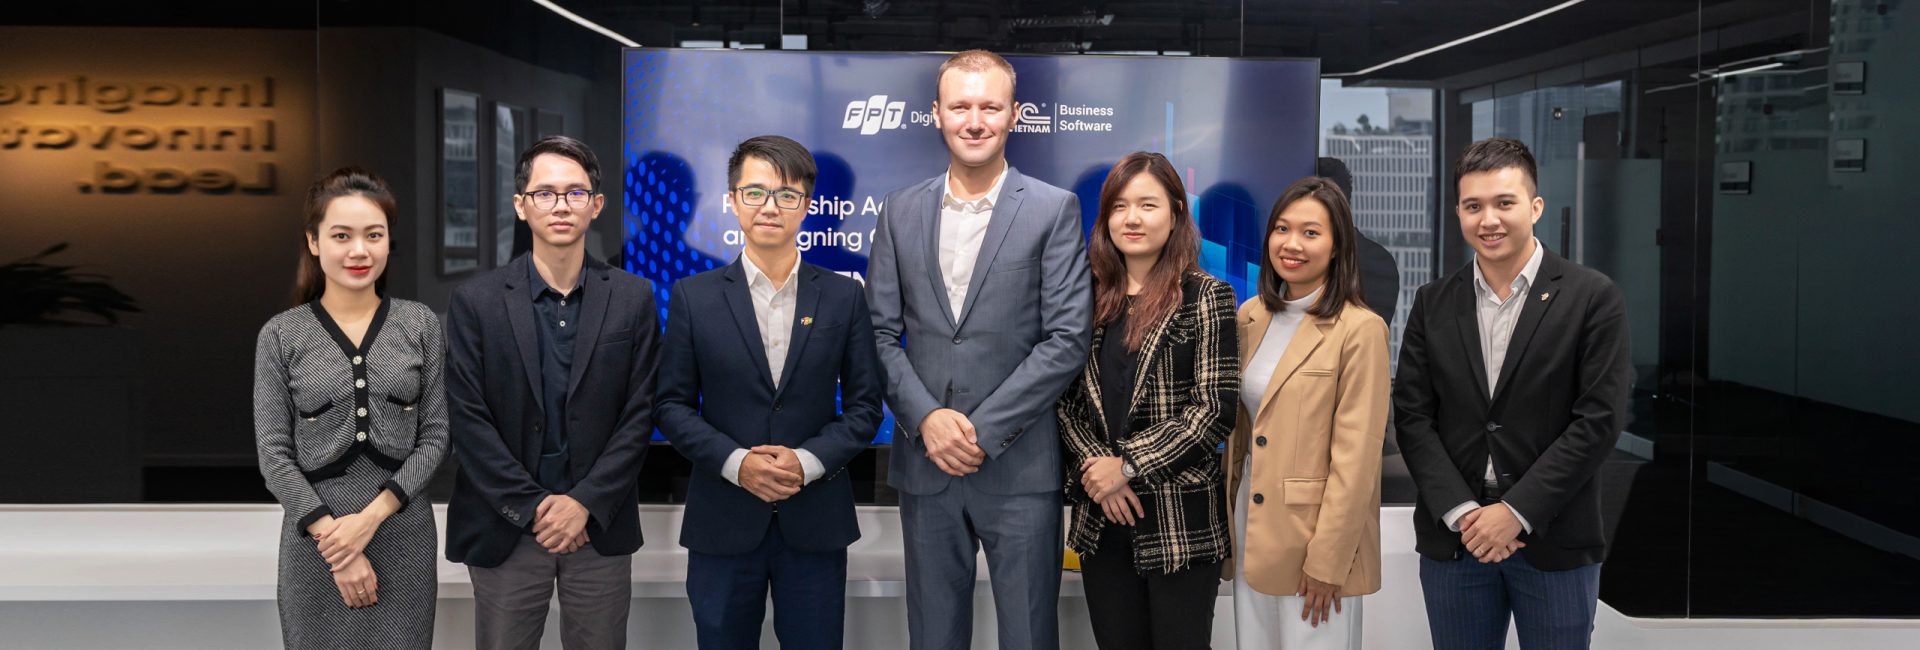 FPT Digital và 1C Vietnam chính thức ký kết hợp tác, góp phần đưa các doanh nghiệp Việt Nam số hoá thành công